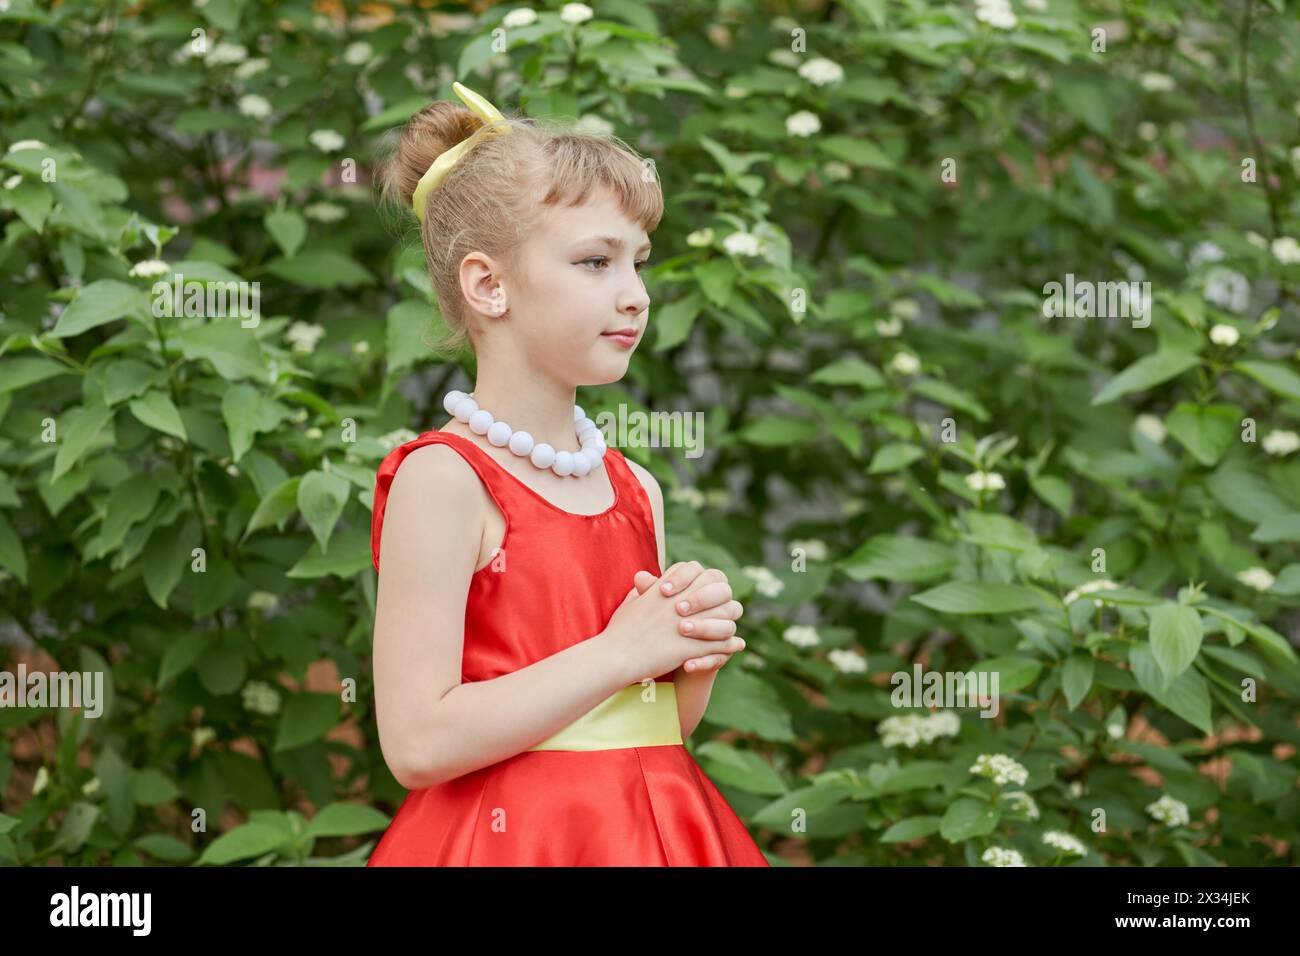 Portrait mi-long de la petite fille vêtue d'une robe rouge avec collier de grosses perles blanches debout à l'extérieur. Banque D'Images